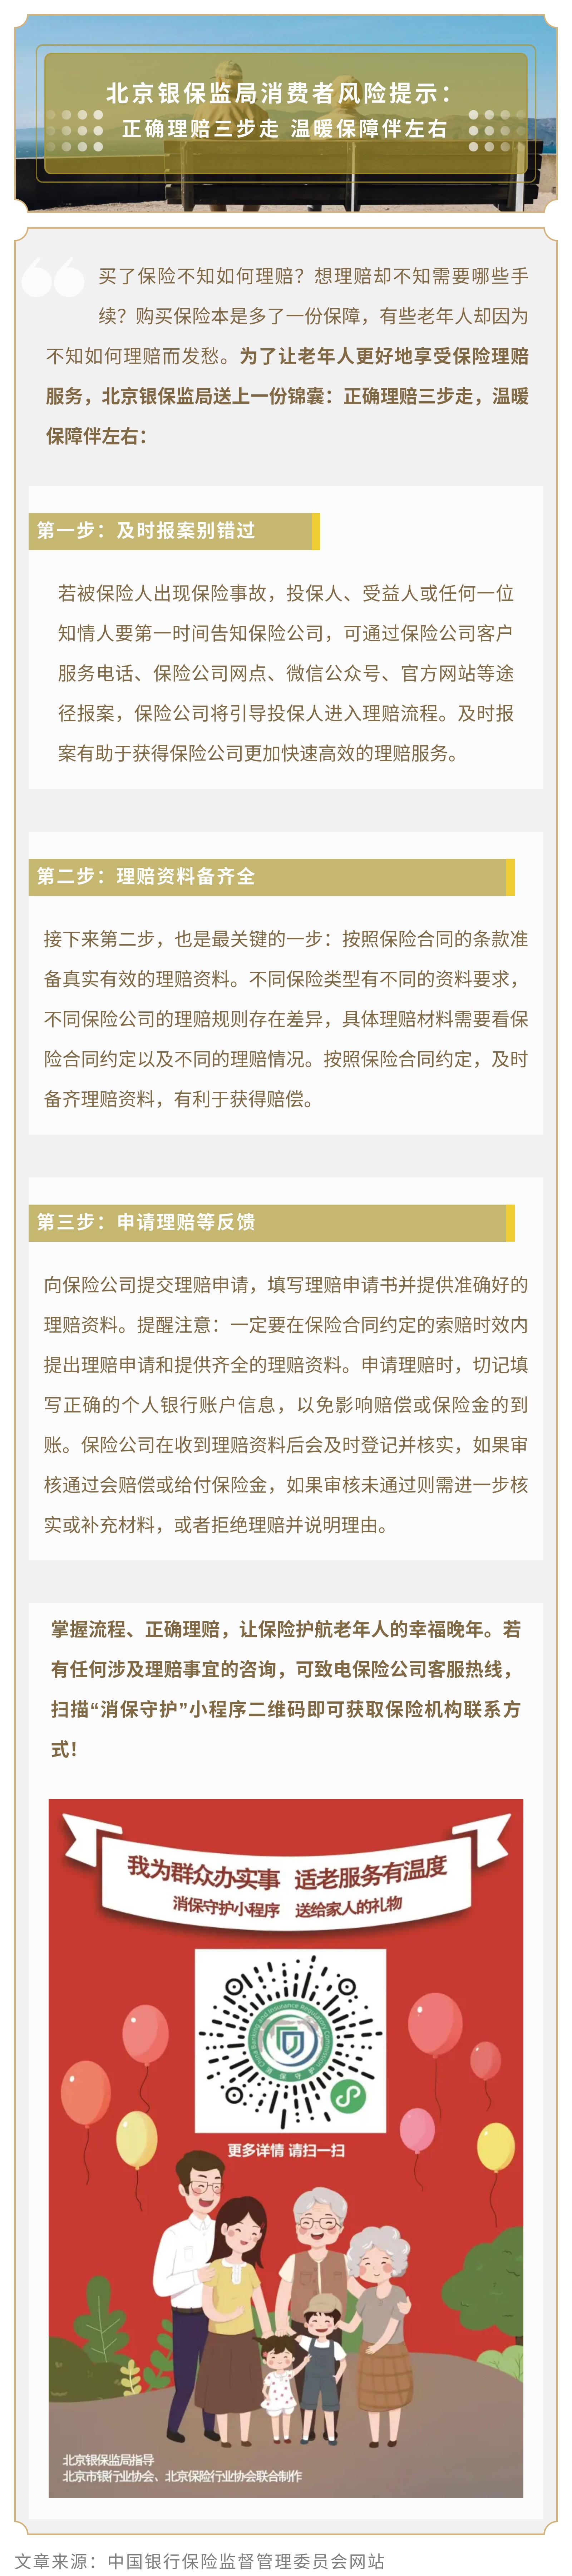 北京银保监局消费者风险提示 ： 正确理赔三步走 温暖保障伴左右.jpg